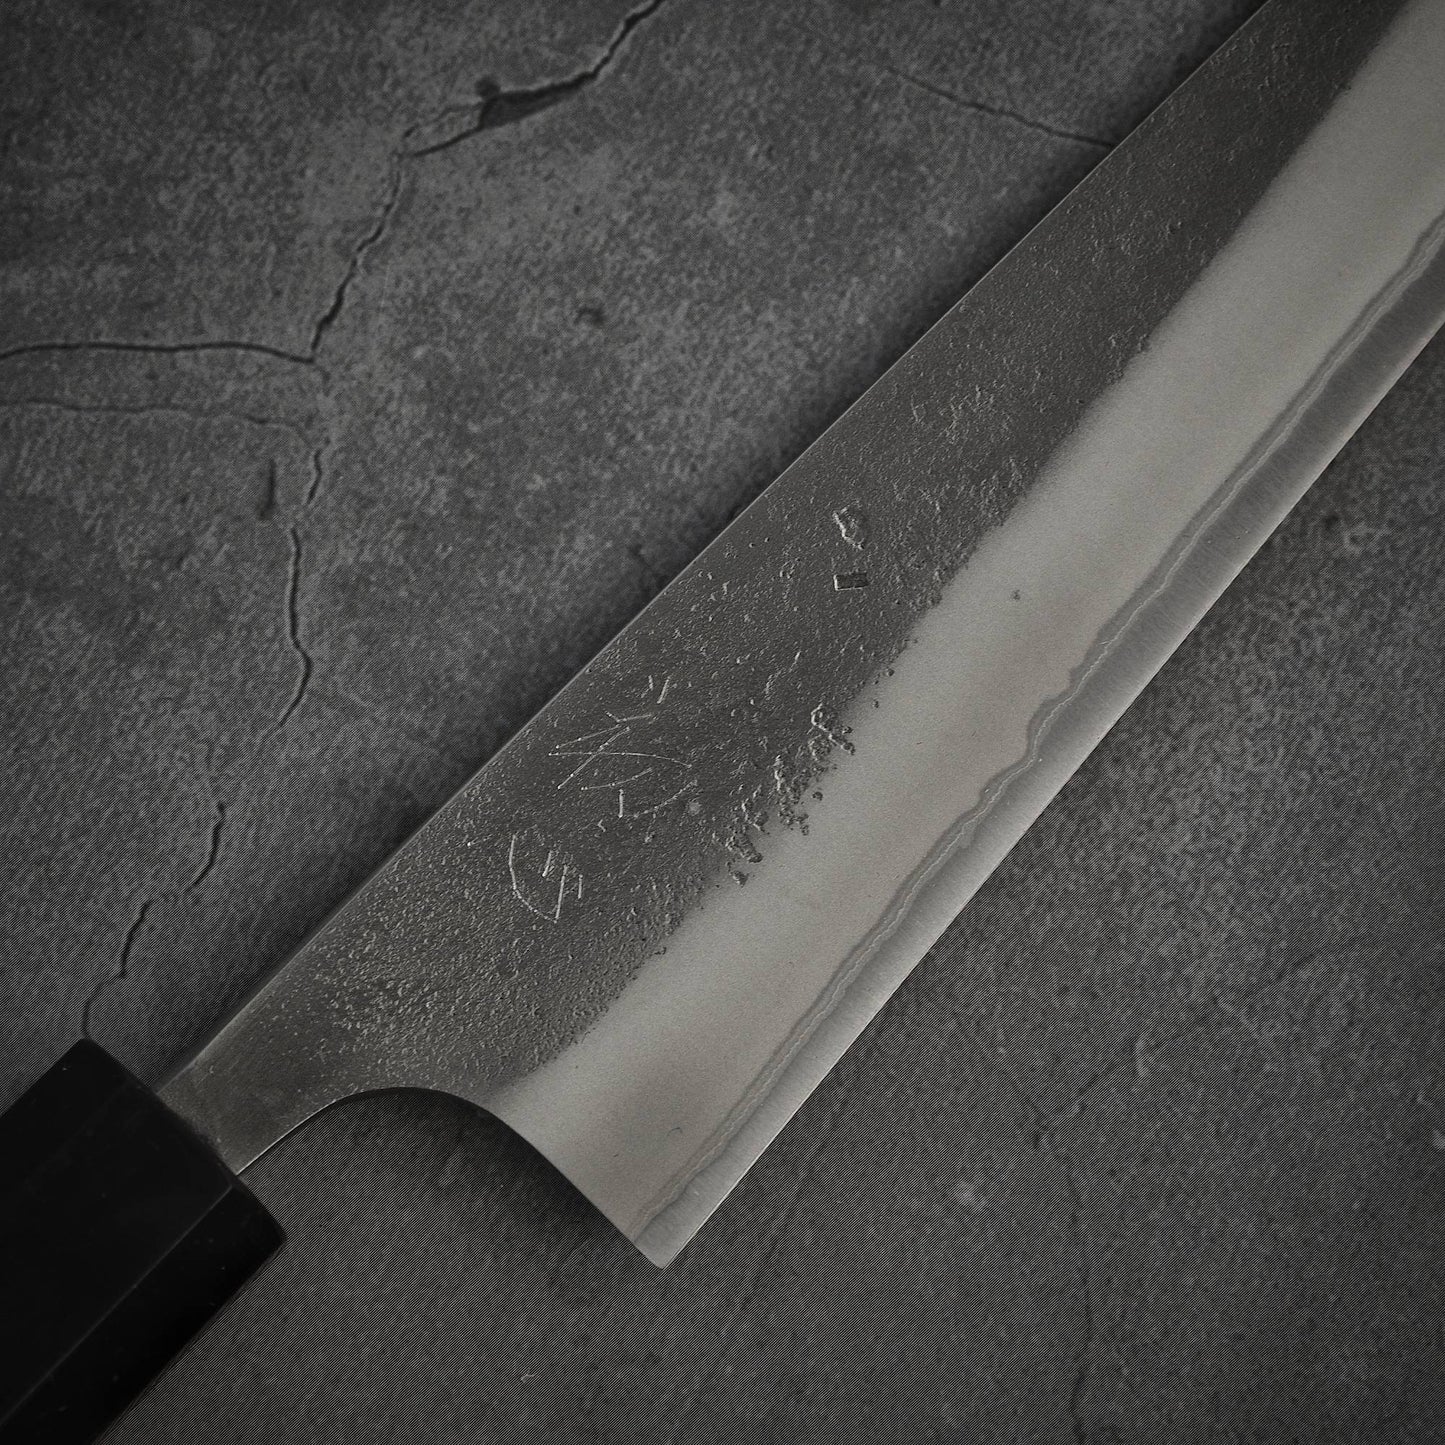 Yoshikane nashiji shirogami#2 petty knife 150mm